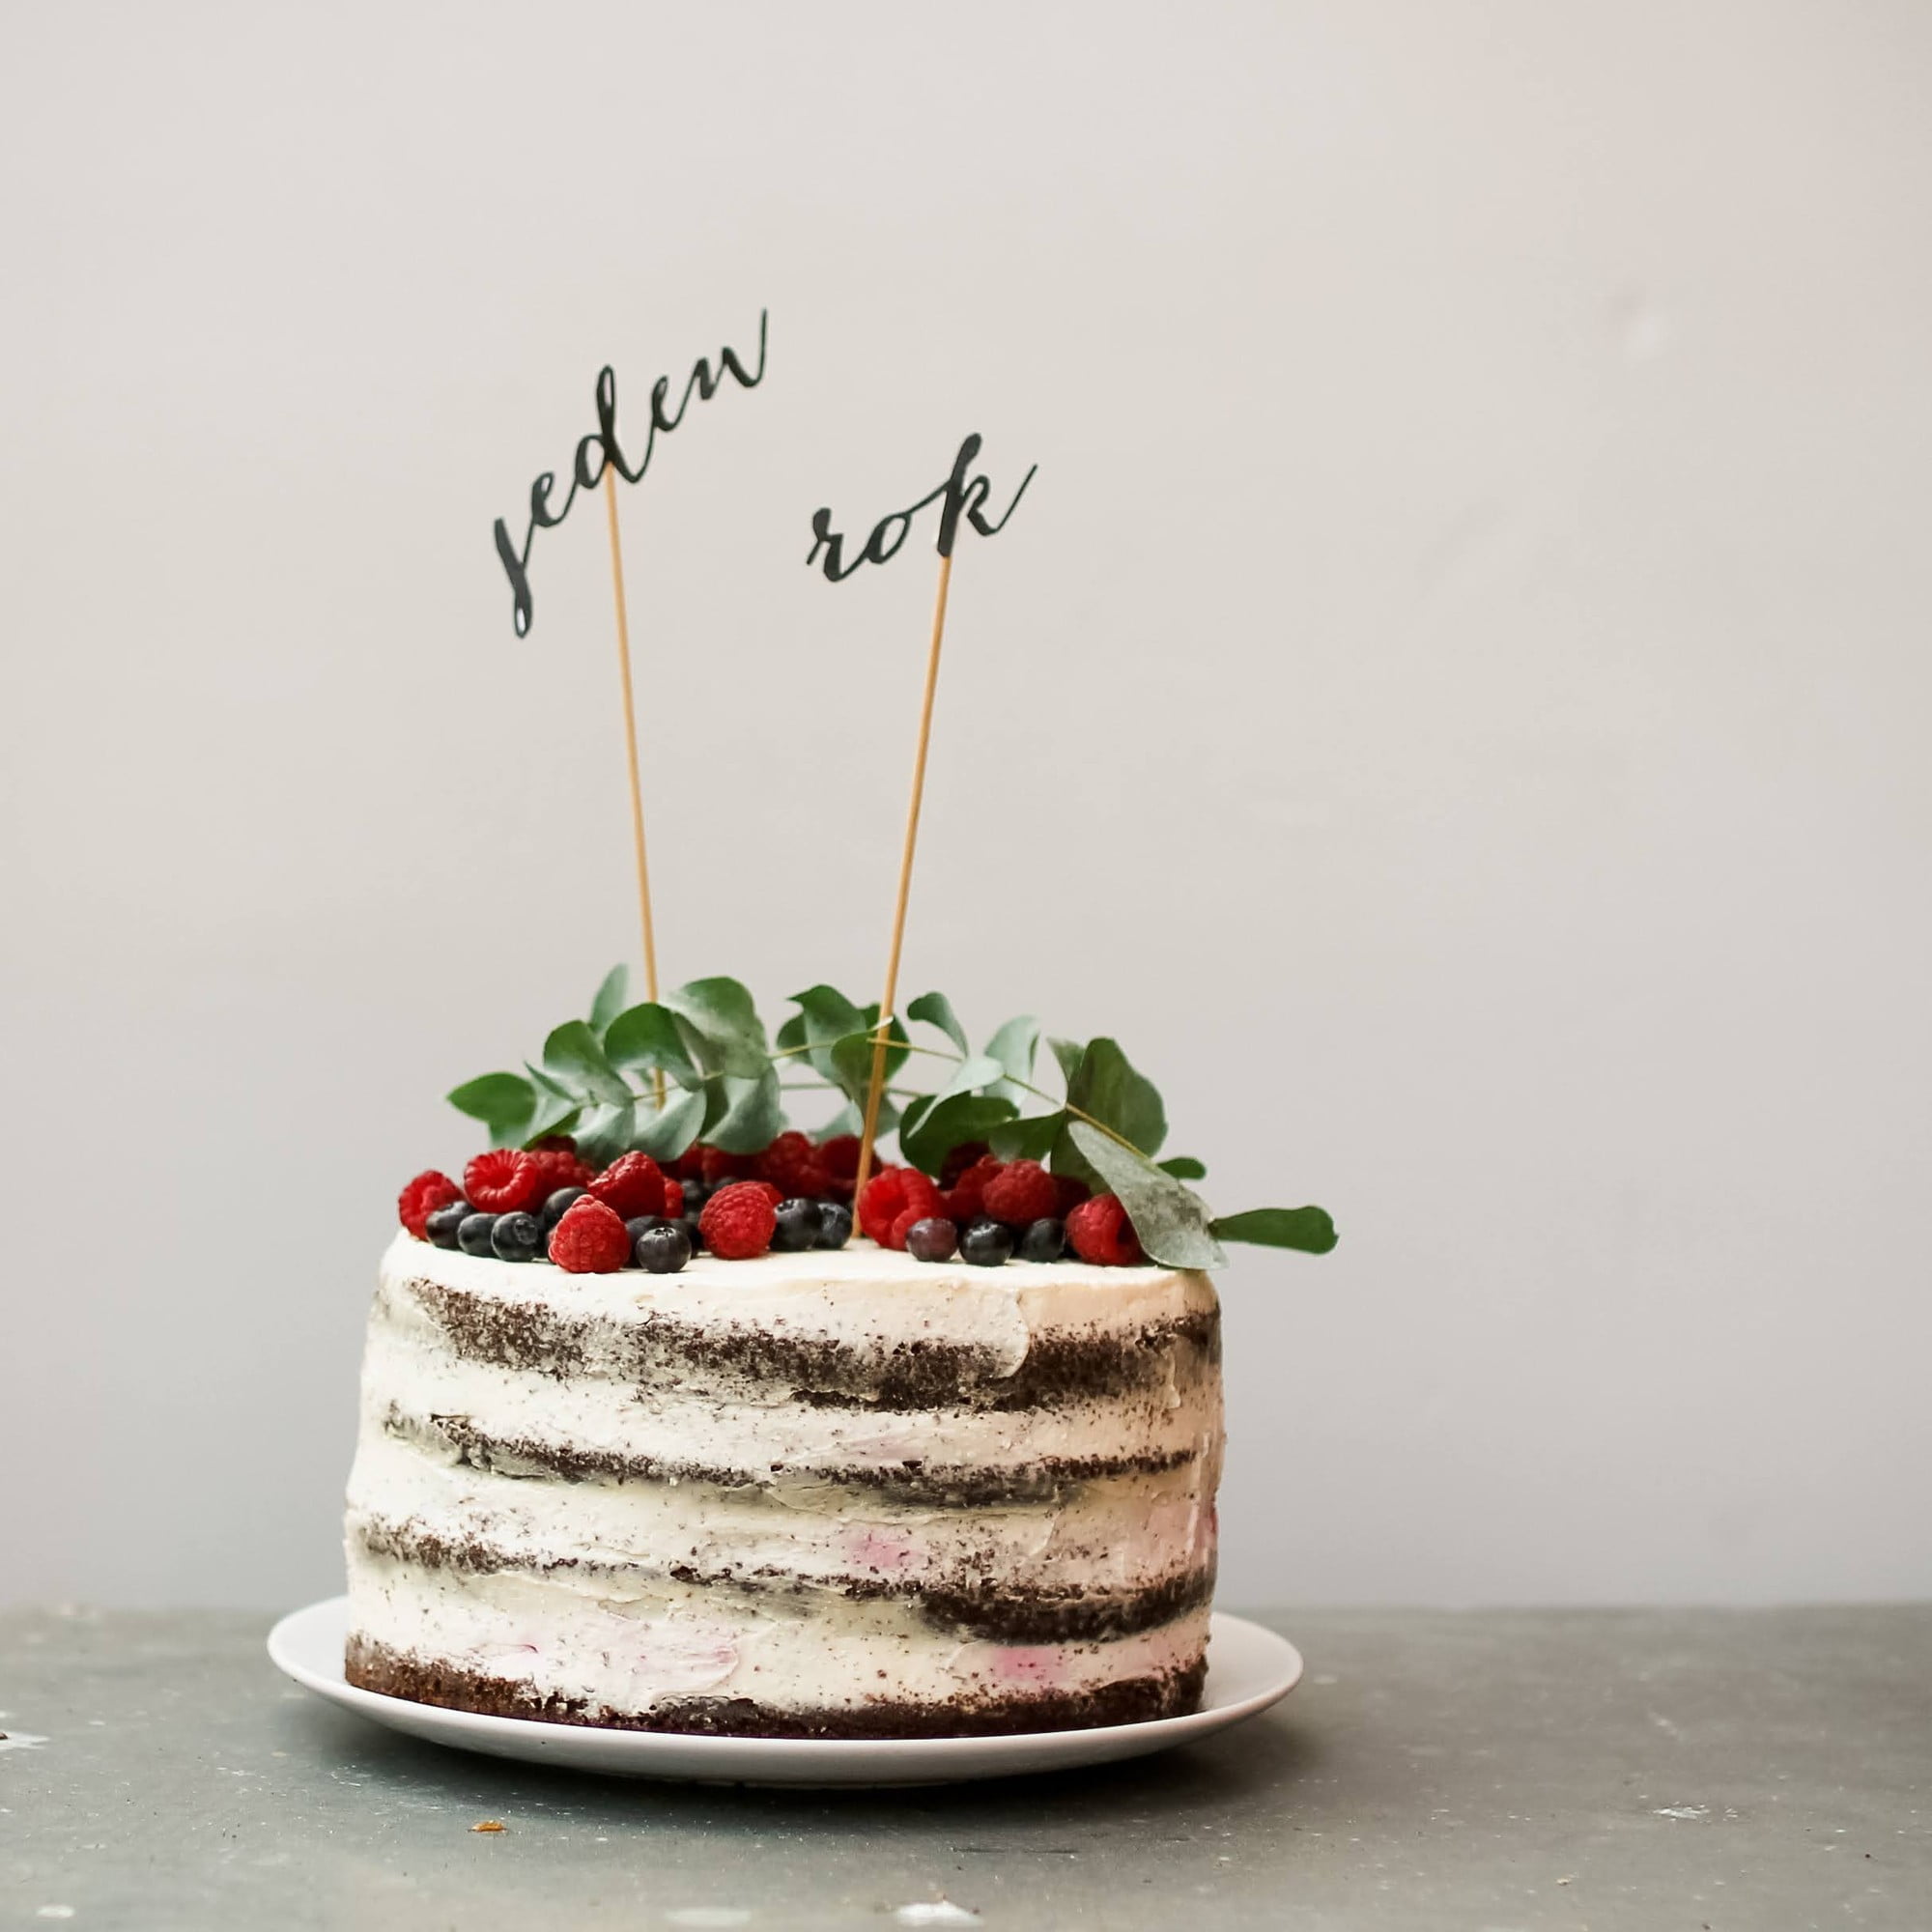 Jednoduchý tip na narozeninový dort. Slova vyřežte řezákem nebo na plotru. 